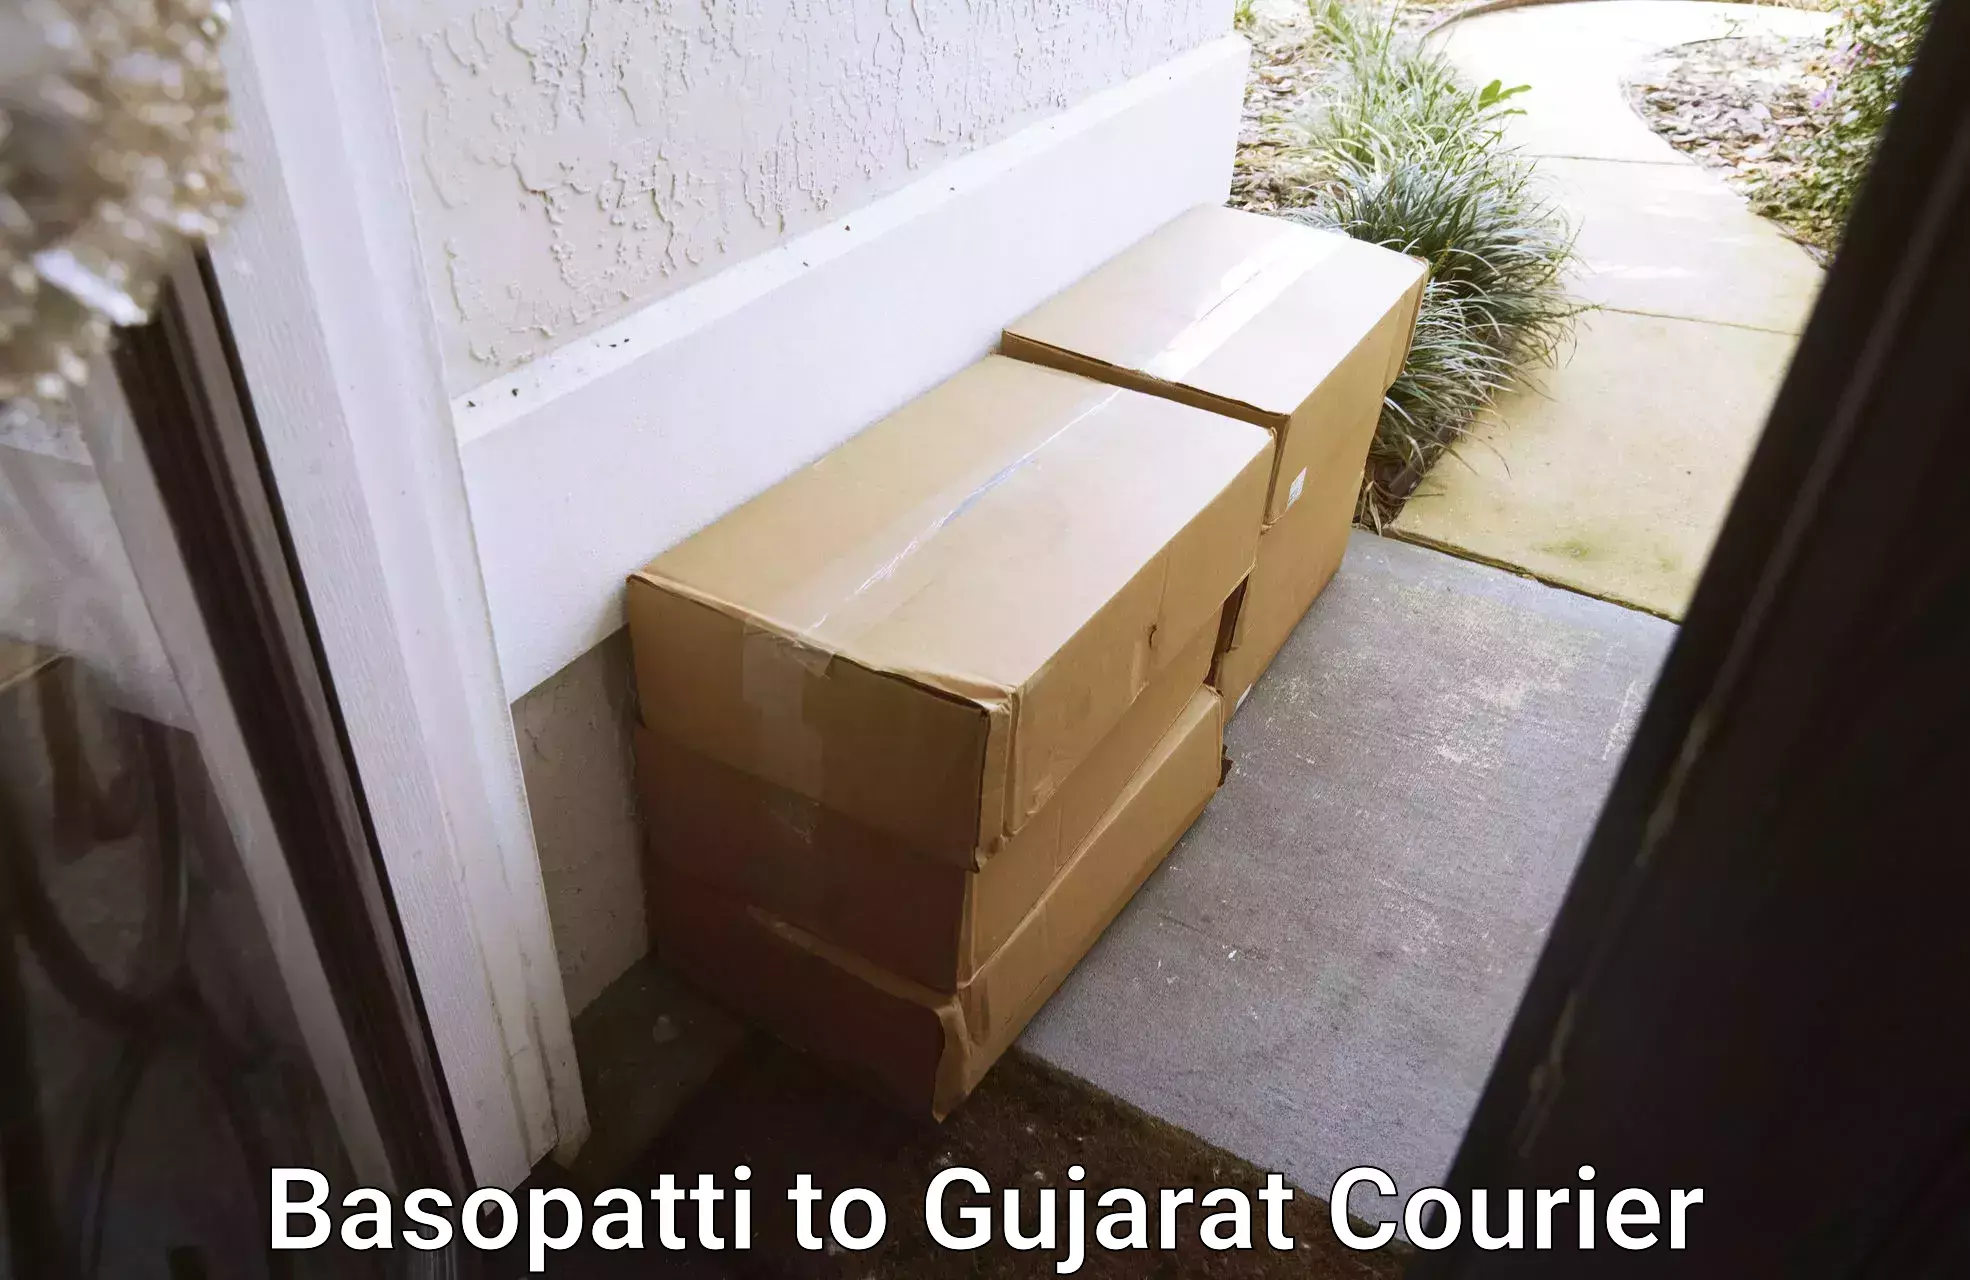 Trusted relocation services Basopatti to Gujarat